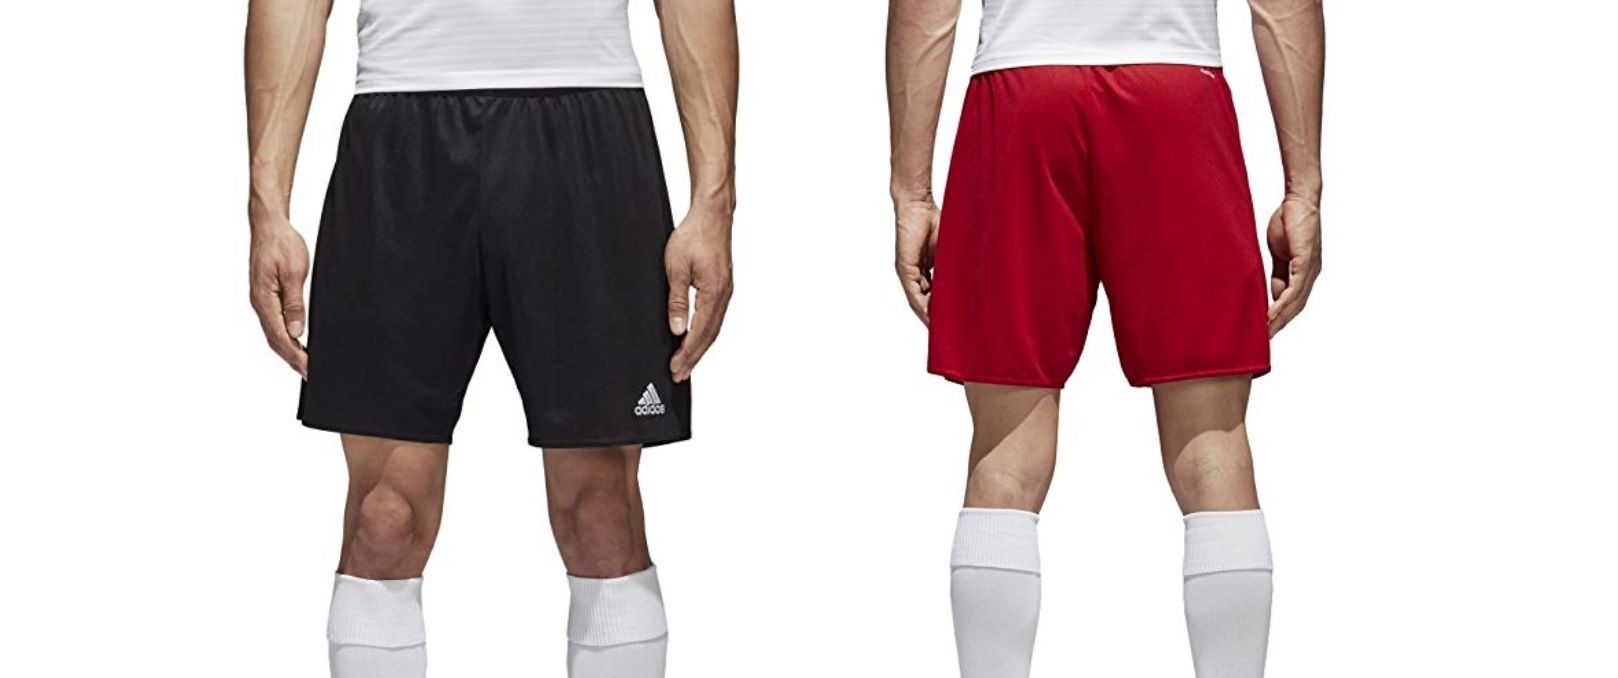 Pantalones cortos deportivos Adidas Parma 16 color negro